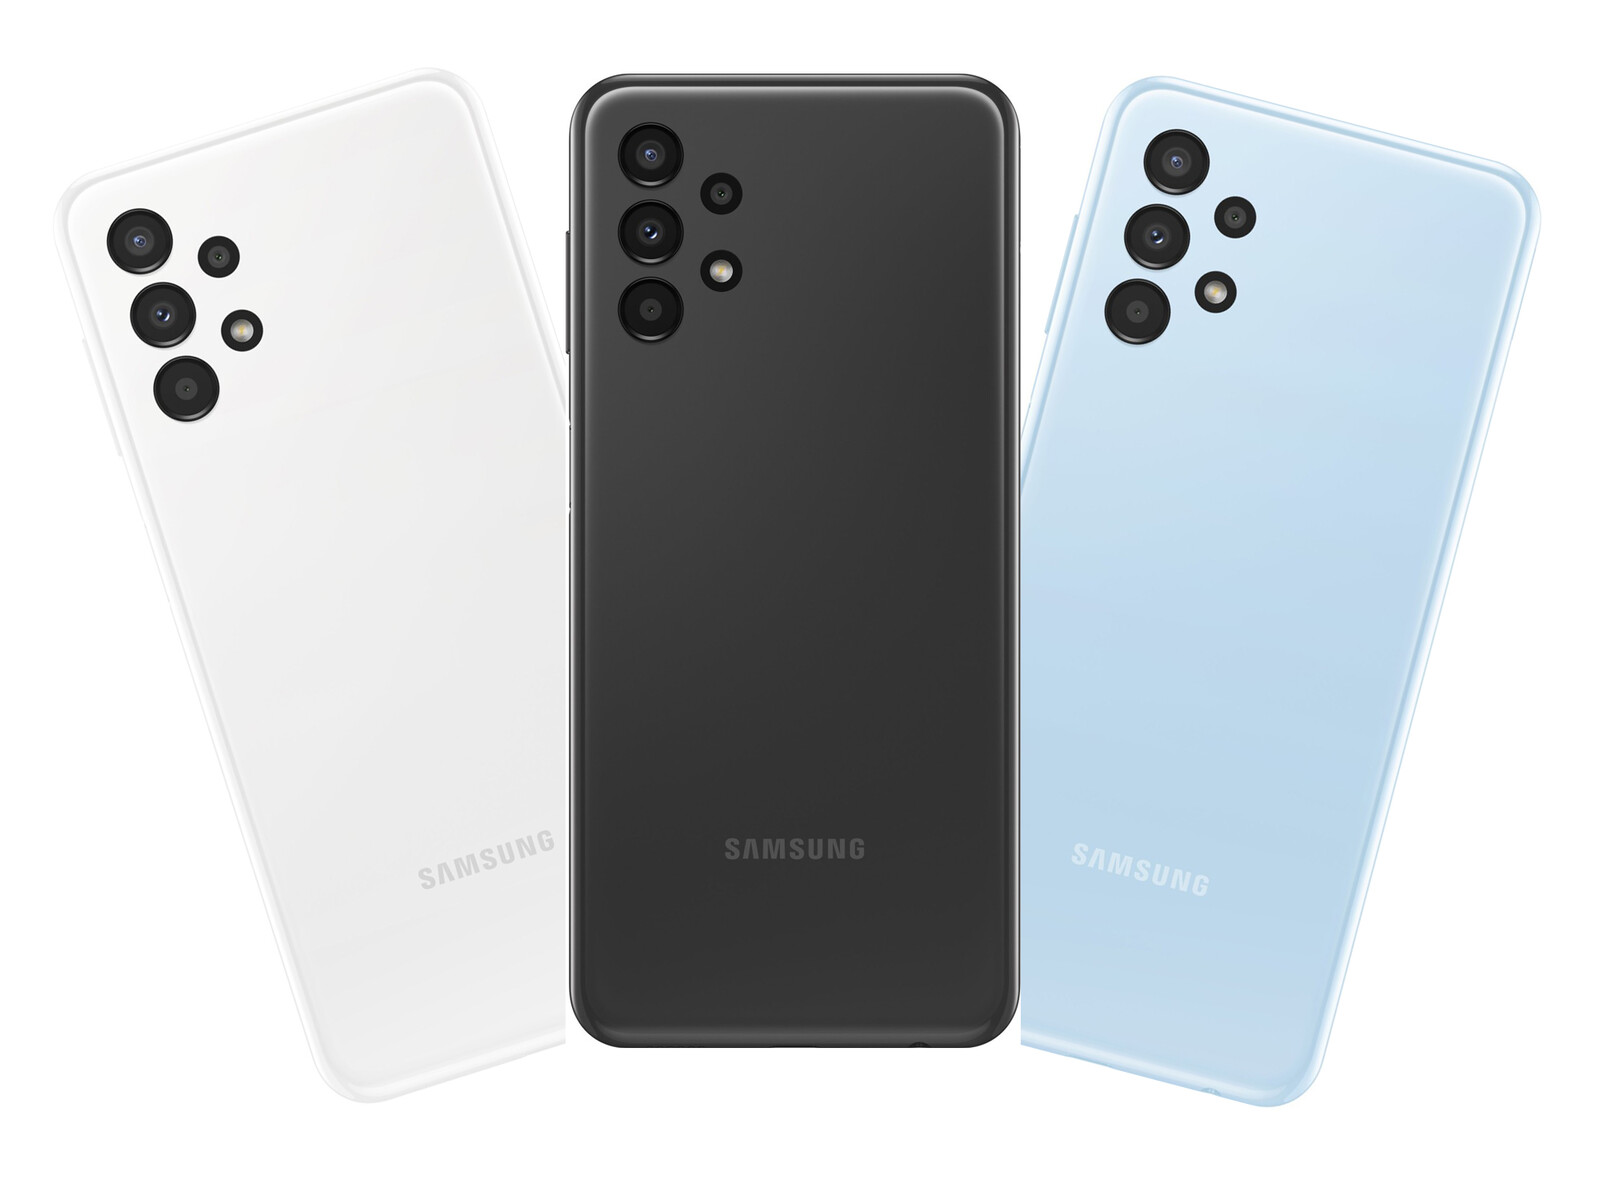 Sản phẩm Samsung Galaxy A Series được đánh giá cao bởi tính năng vượt trội và thiết kế sang trọng. Những hình ảnh về sản phẩm này sẽ khiến bạn khám phá thêm được nhiều tính năng mới mà bạn chưa từng biết về chiếc điện thoại này.